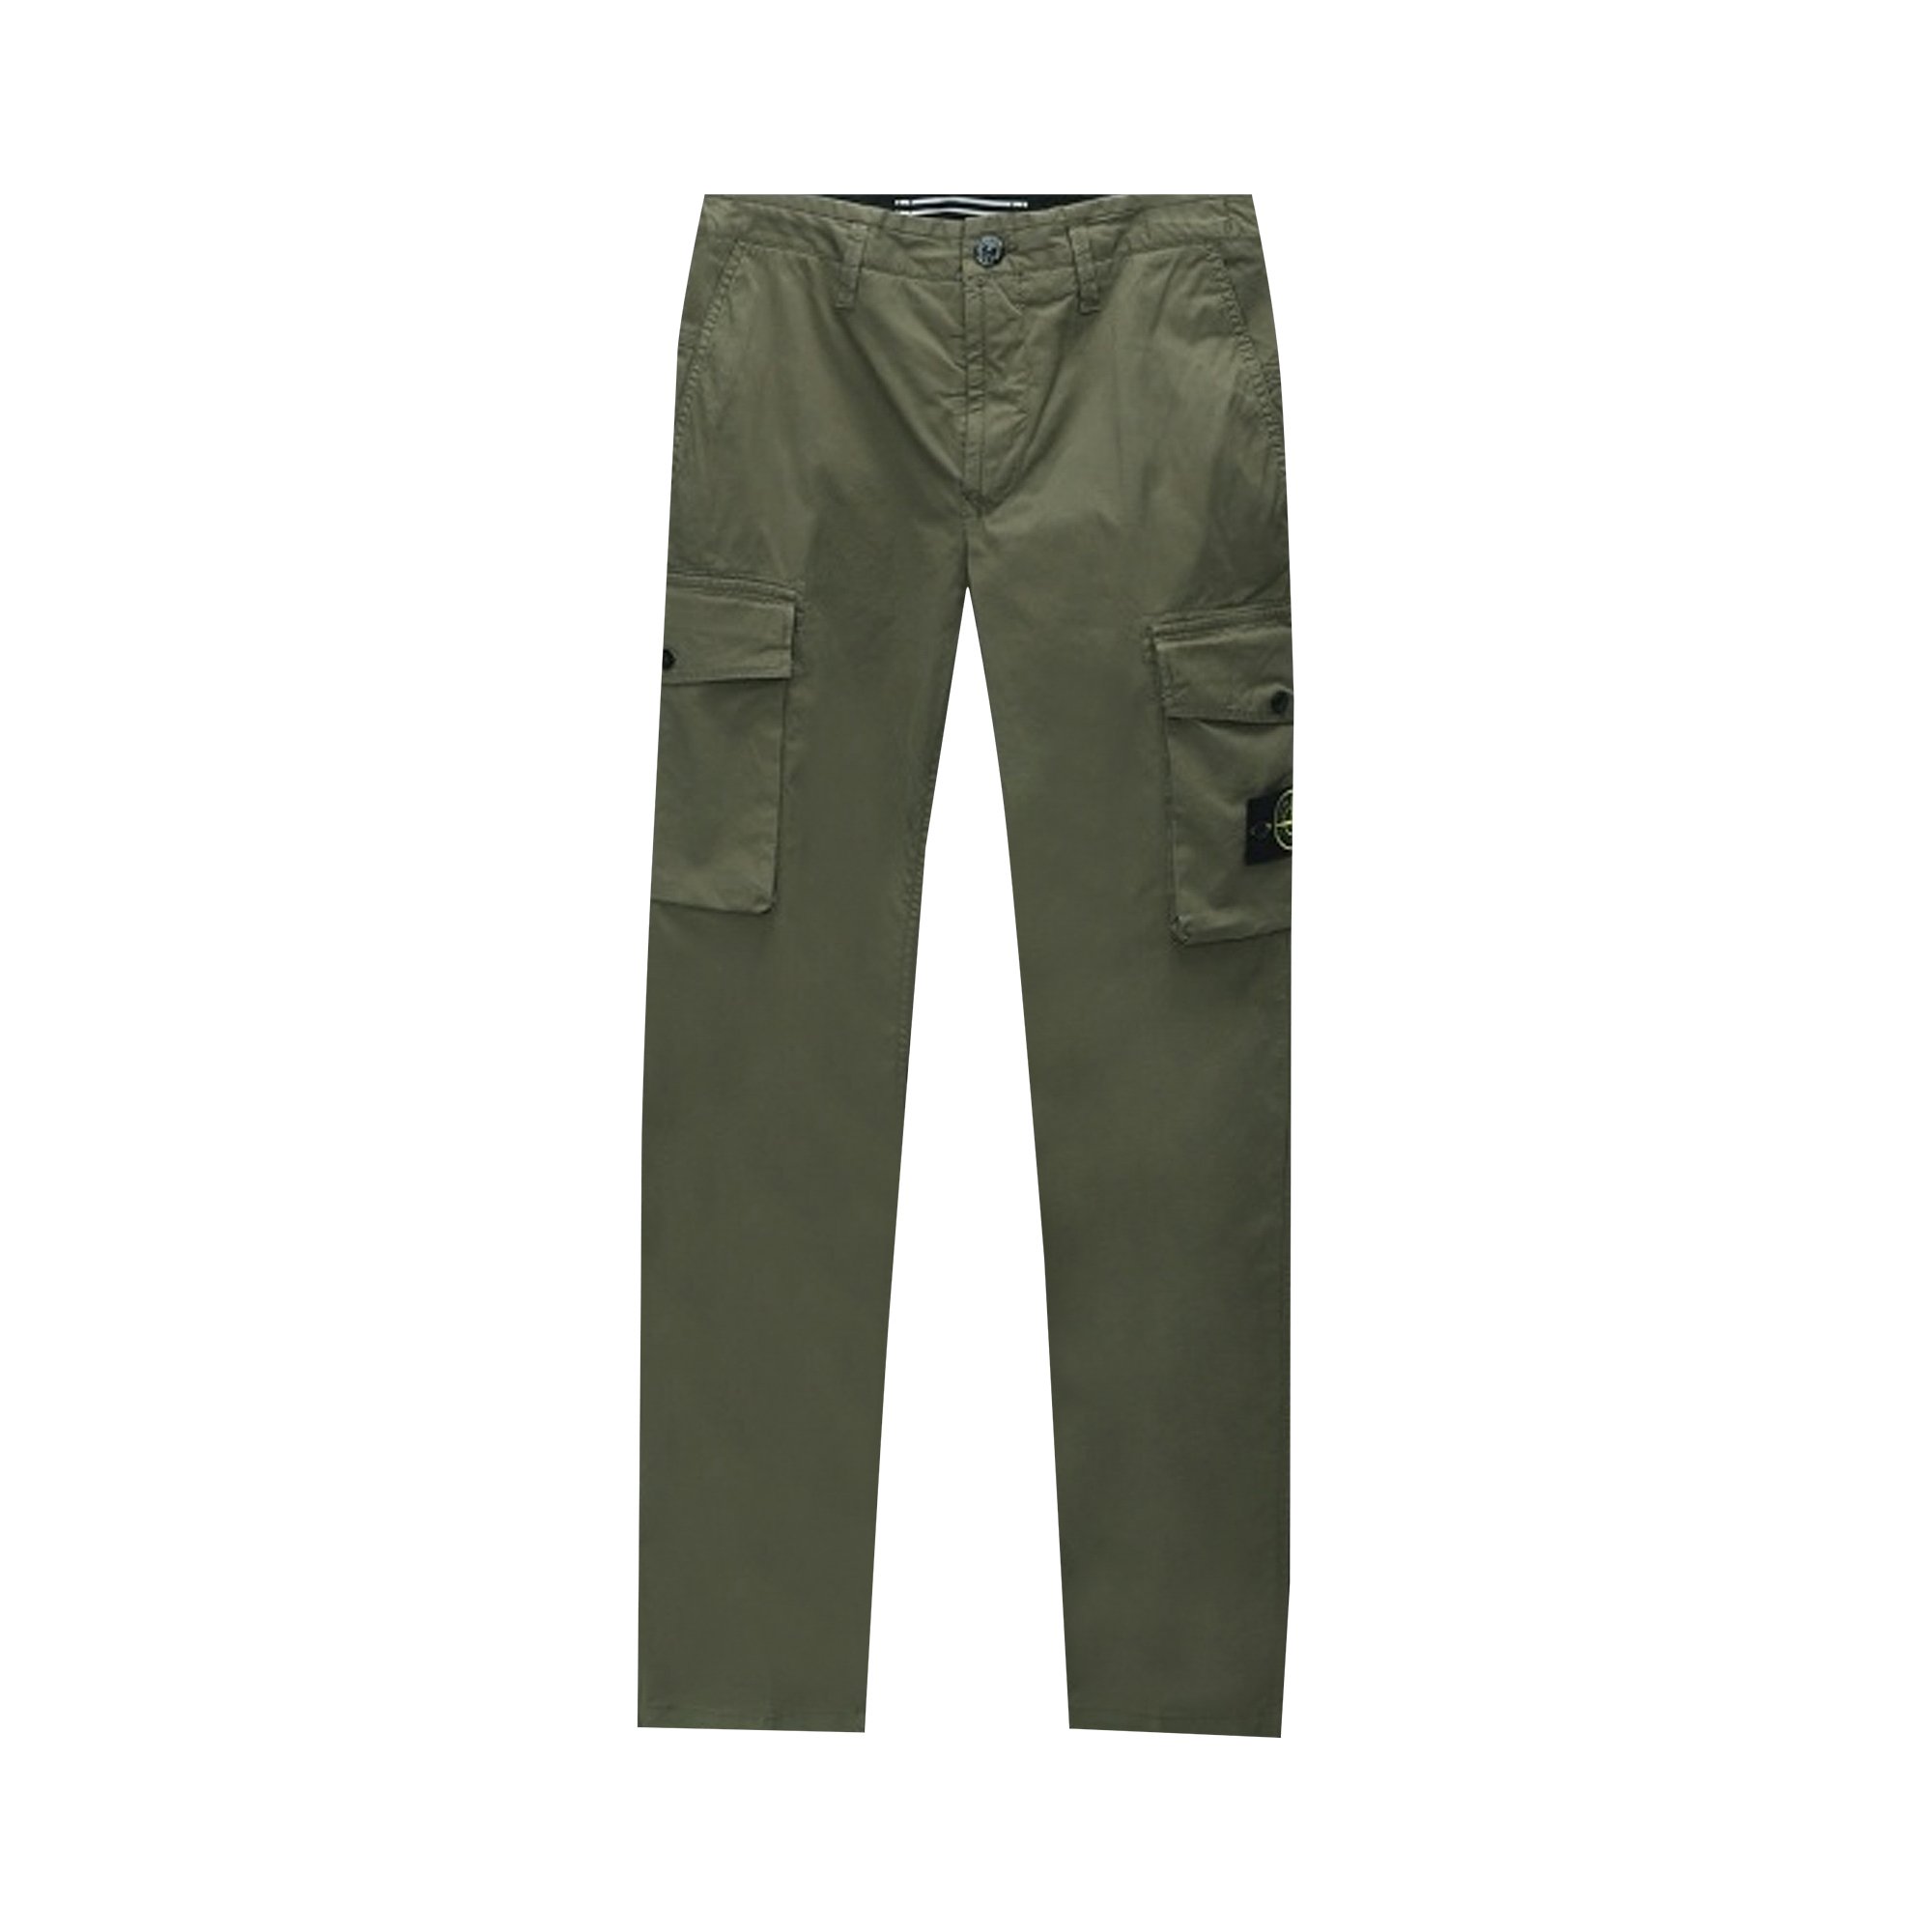 Buy Stone Island Cargo Pants 'Olive' - 741532119 V0058 | GOAT